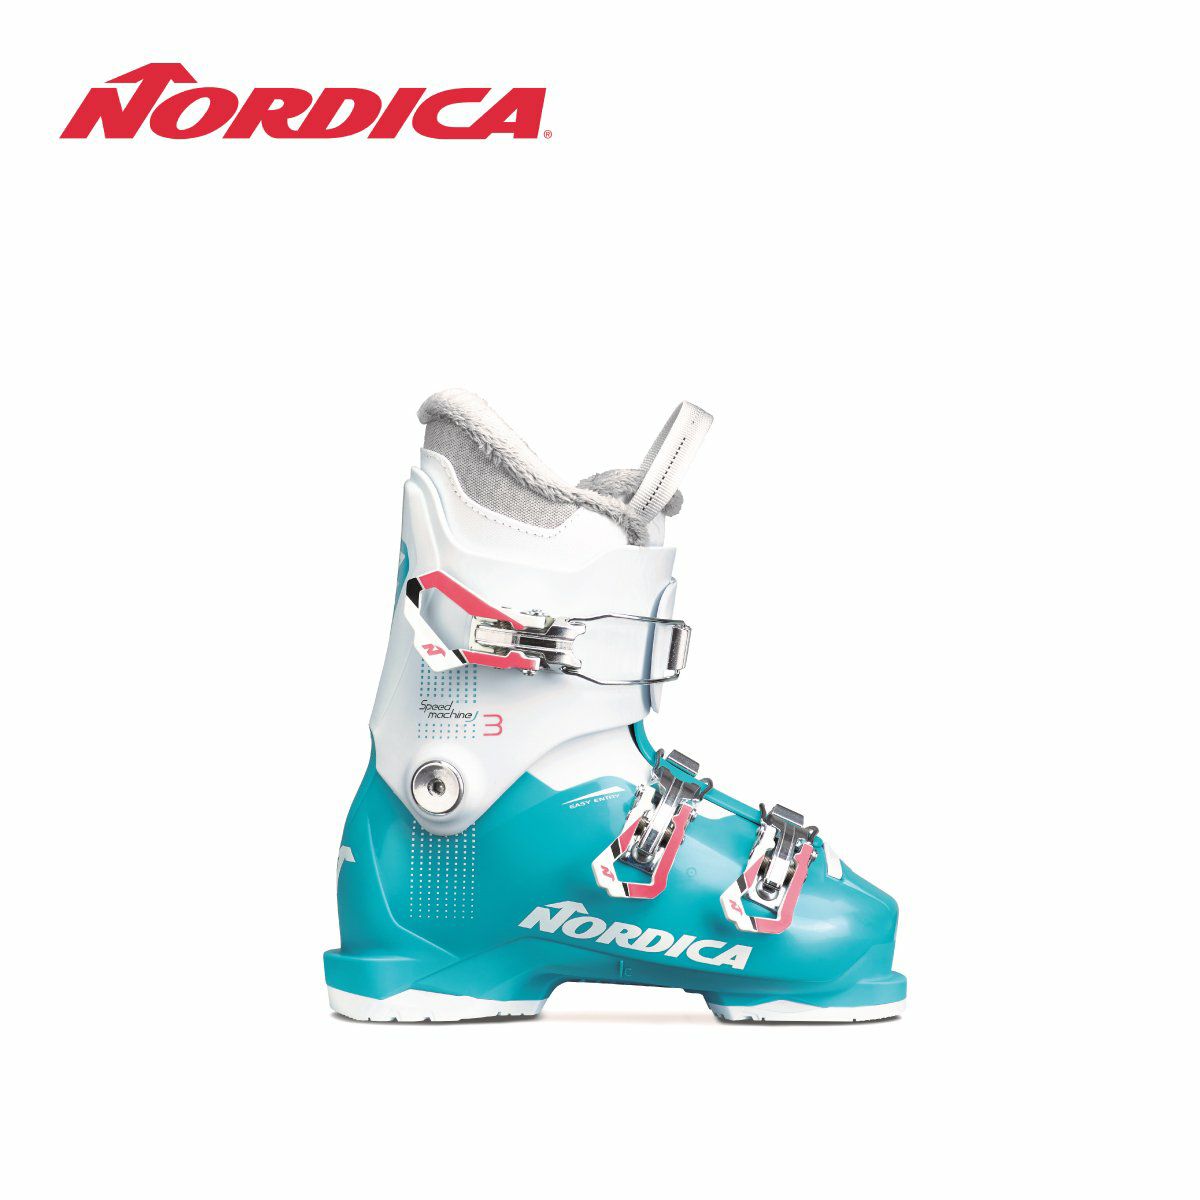 843円 高級品市場 NORDICA 子供用スキーブーツ 20.5cm